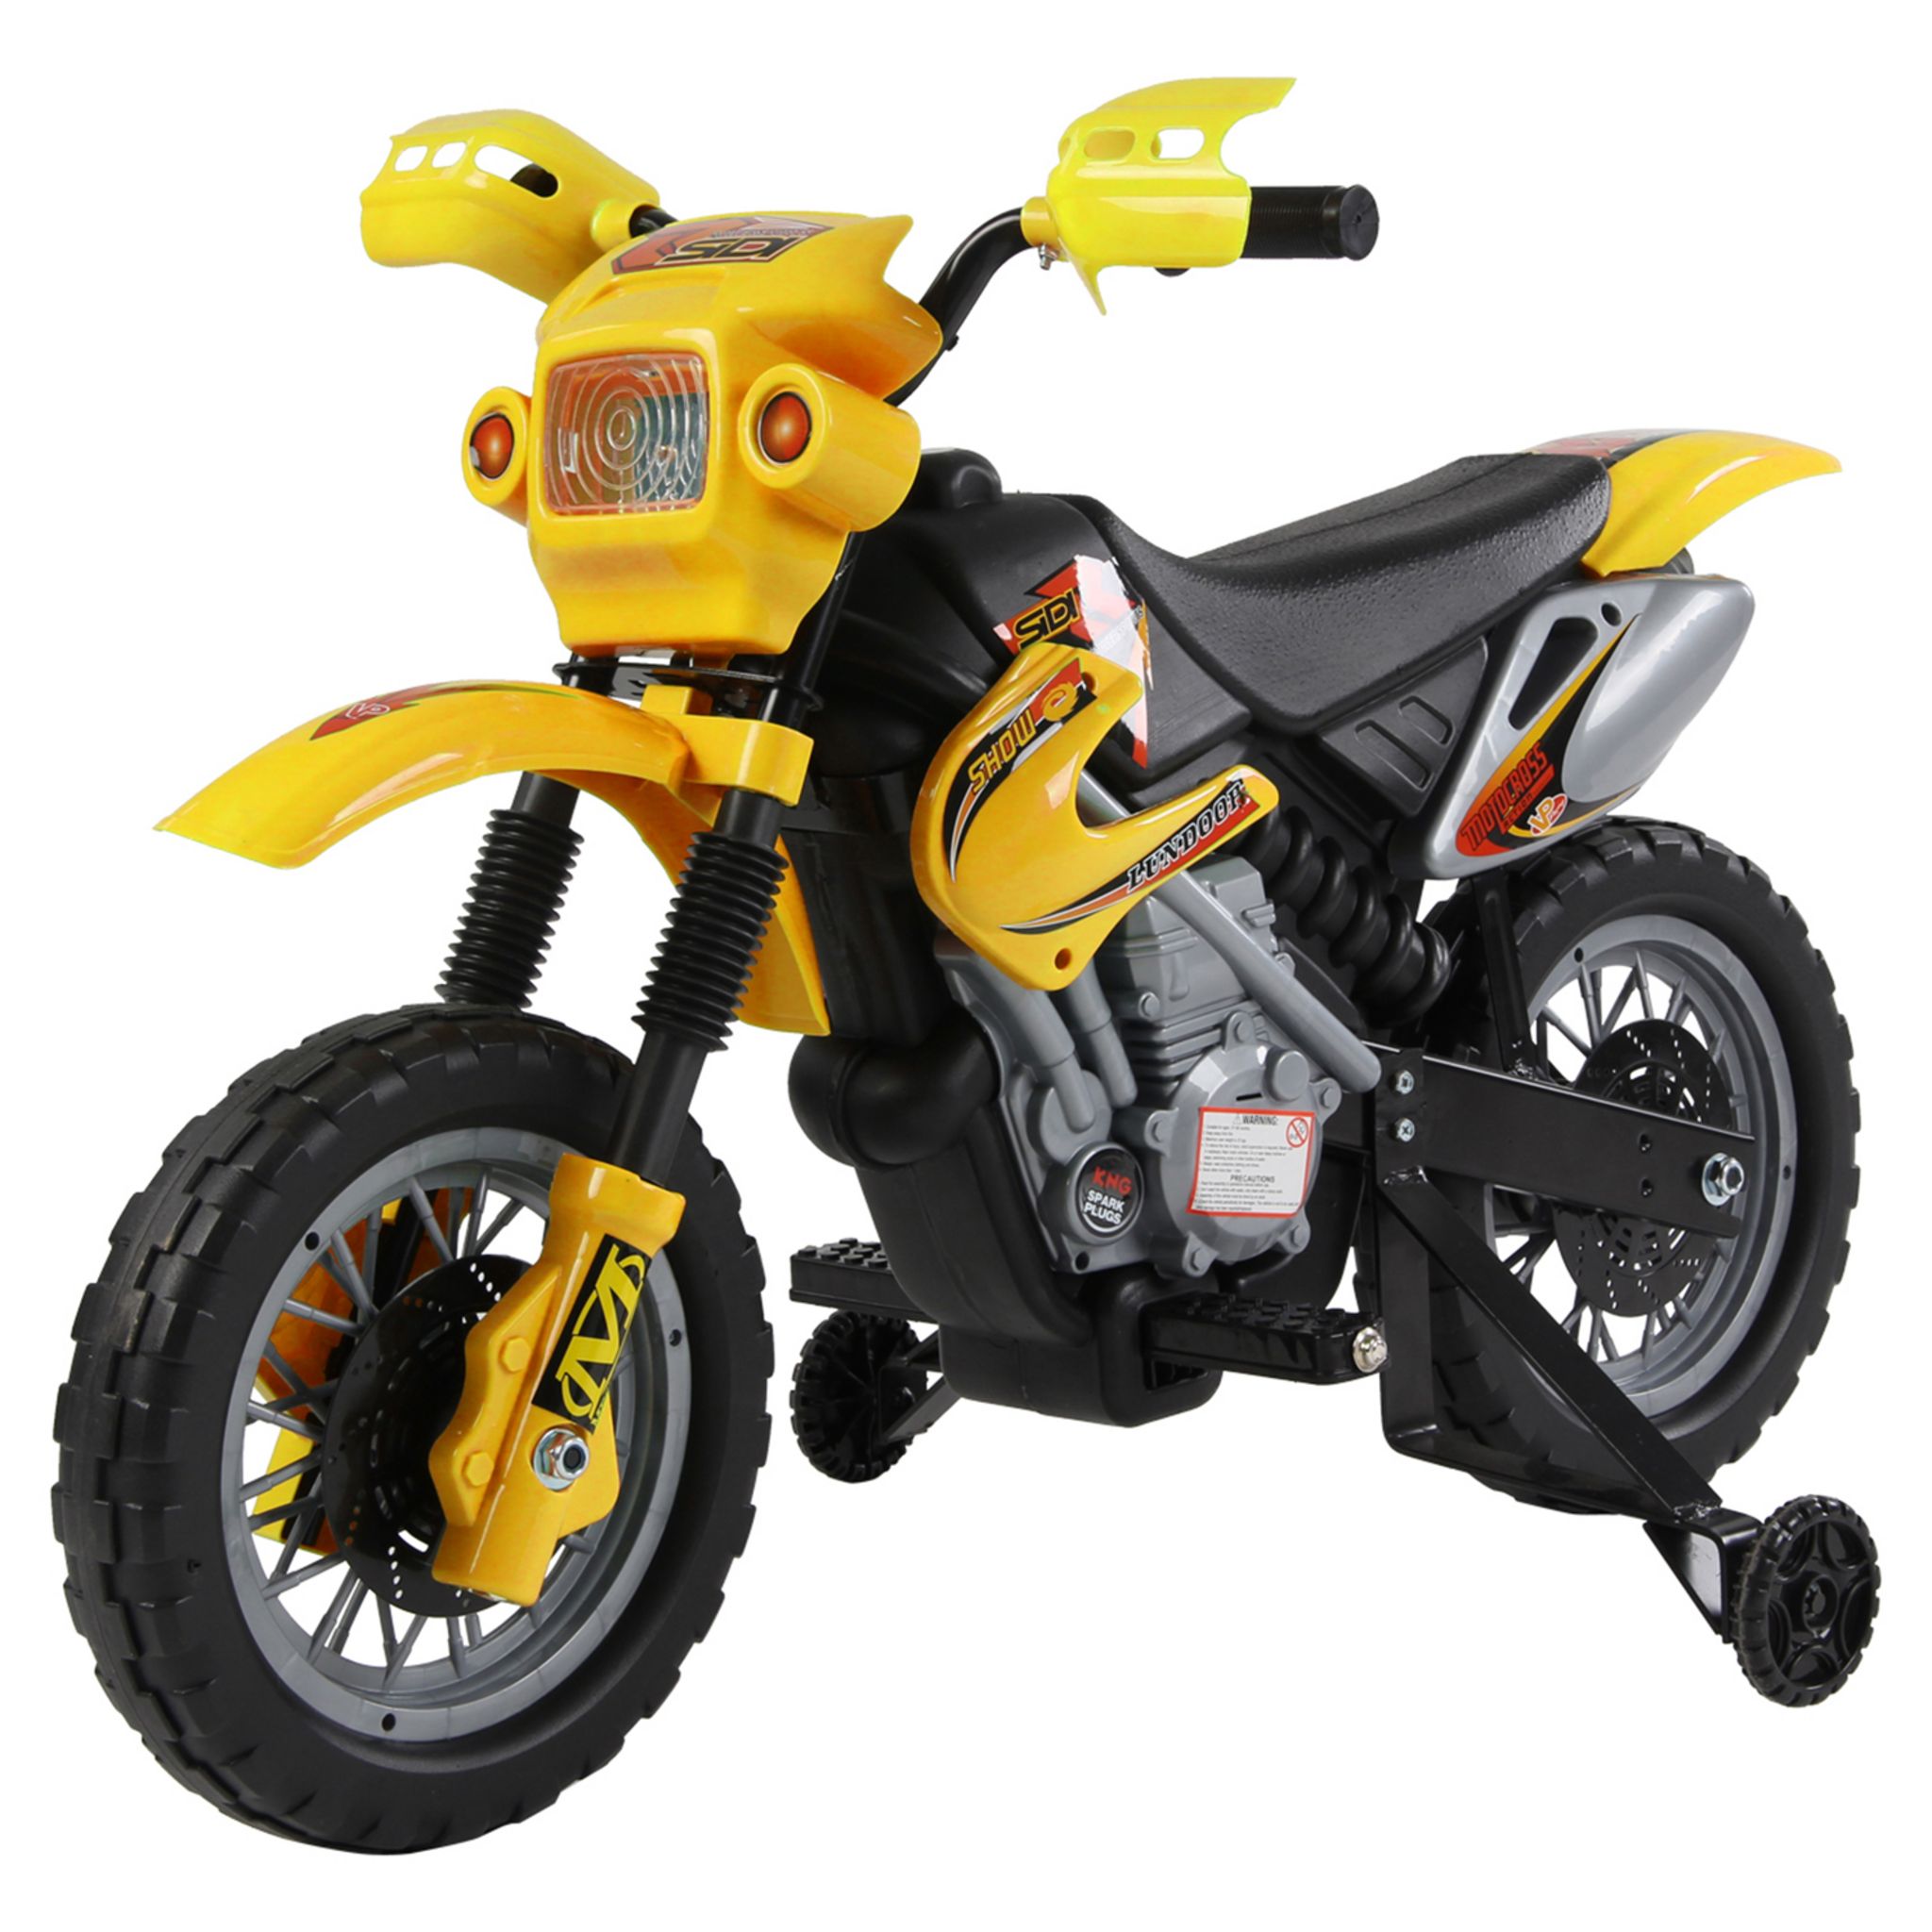 HOMCOM Moto Cross électrique enfant 3 à 6 ans 6 V phares klaxon musiques  102 x 53 x 66 cm jaune et noir pas cher 